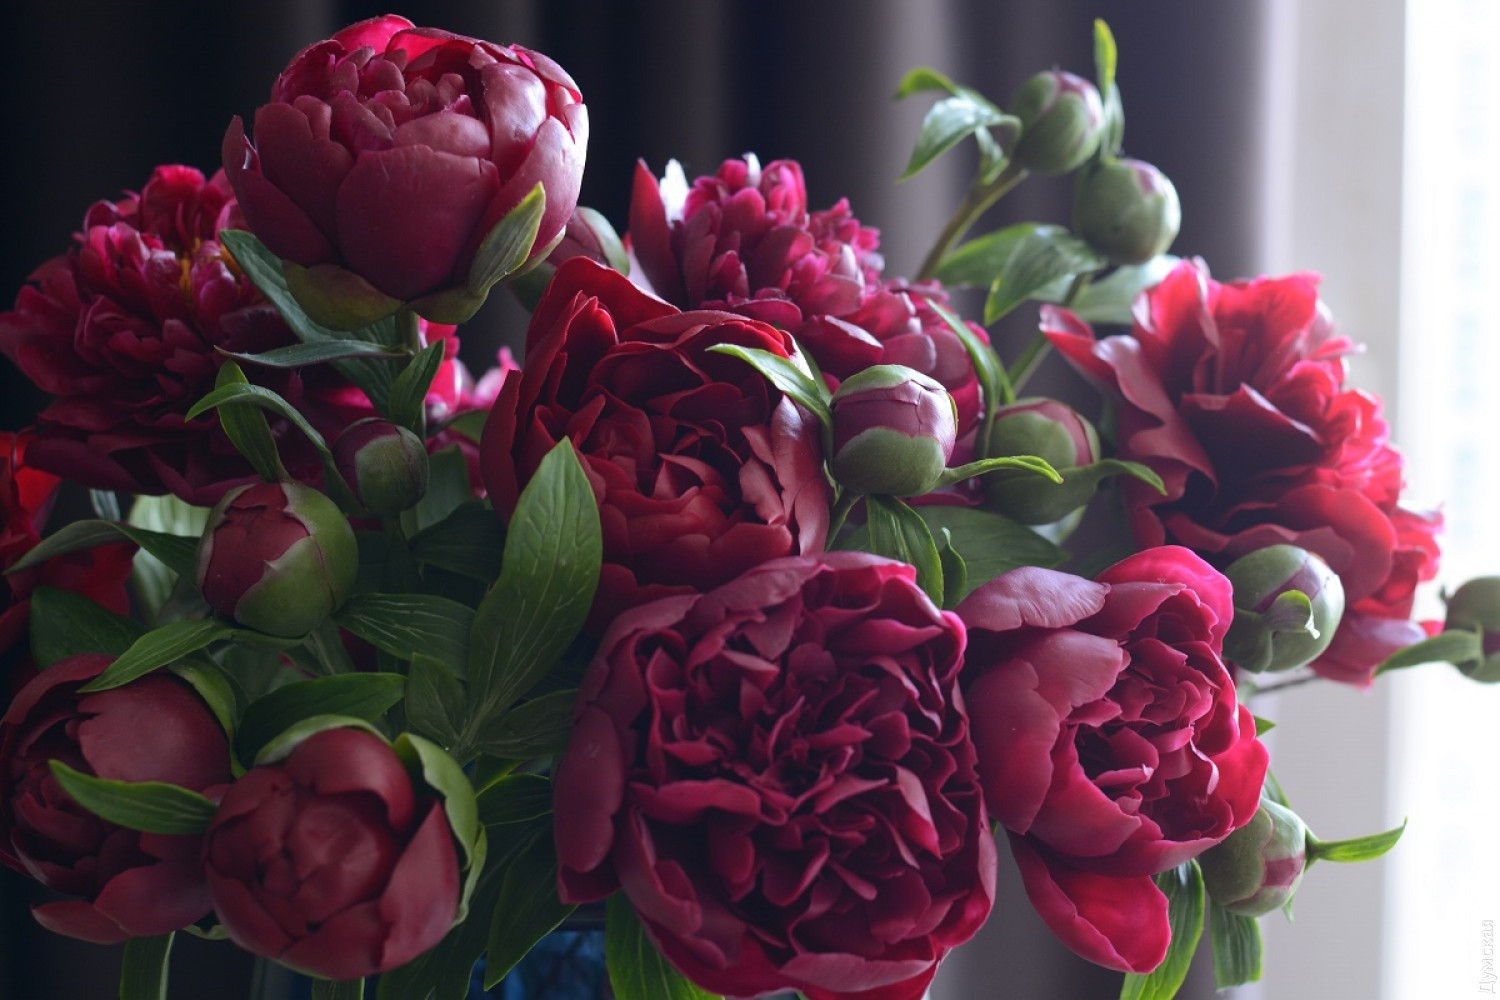 Потрясающе реалистичные фарфоровые цветы Олеси Галущенко Галущенко, Олеси, цветок, Олеся, может, совсем, изучать, стала, решила, который, цветов, настолько, букеты, сложно, влажности, полностью, творения, дёшевы, влажной, всегда